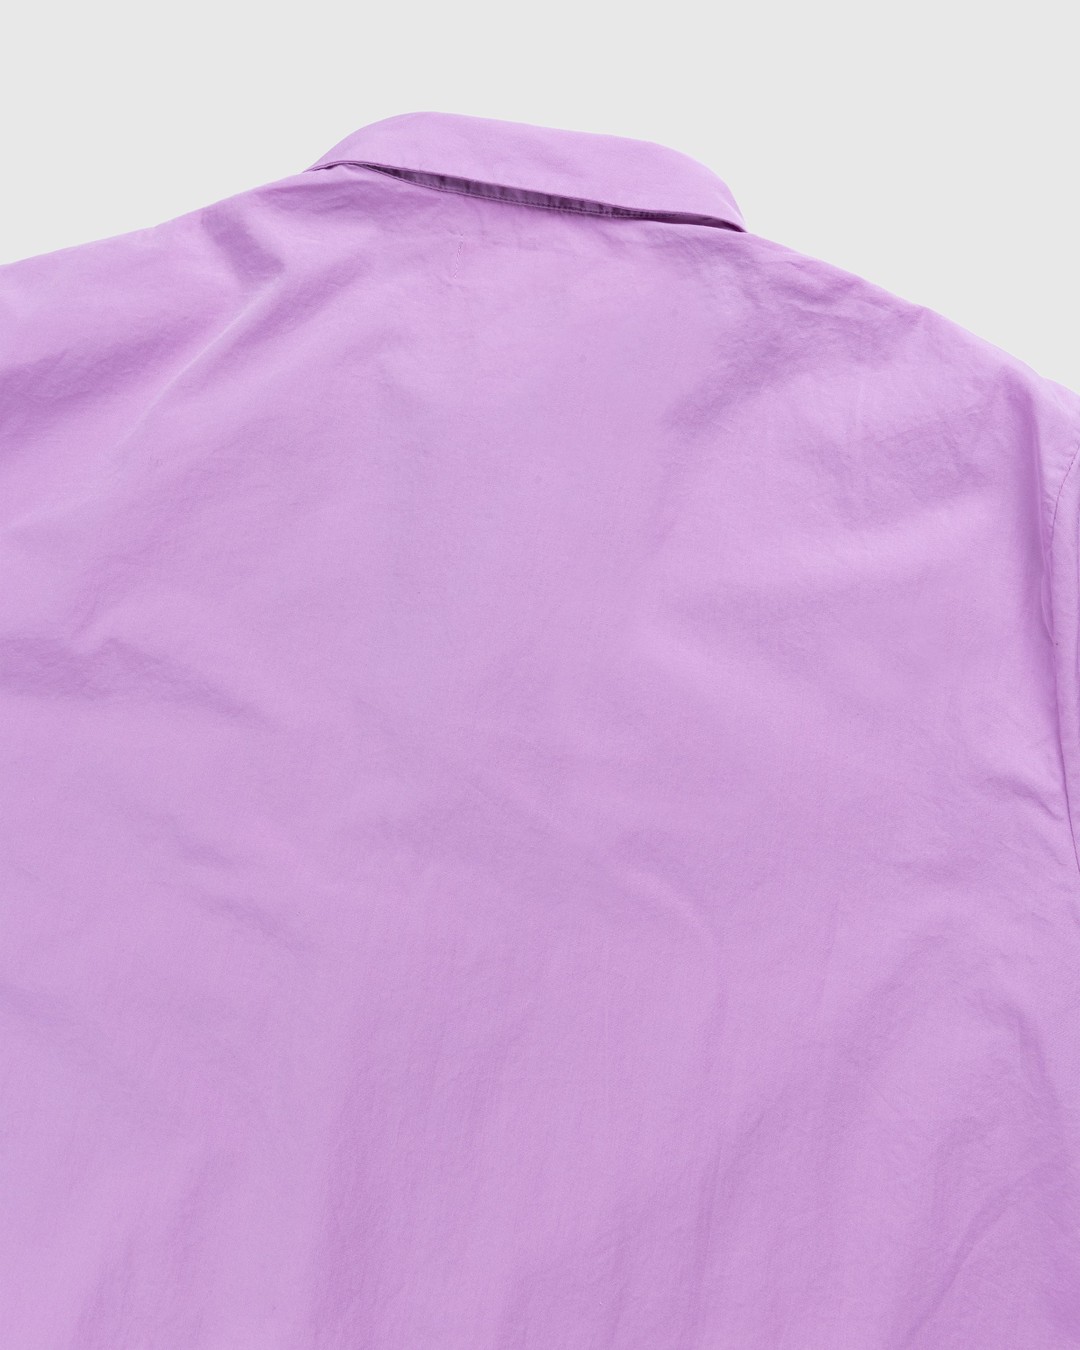 Tekla – Cotton Poplin Pyjamas Shirt Purple Pink - Pyjamas - Pink - Image 4